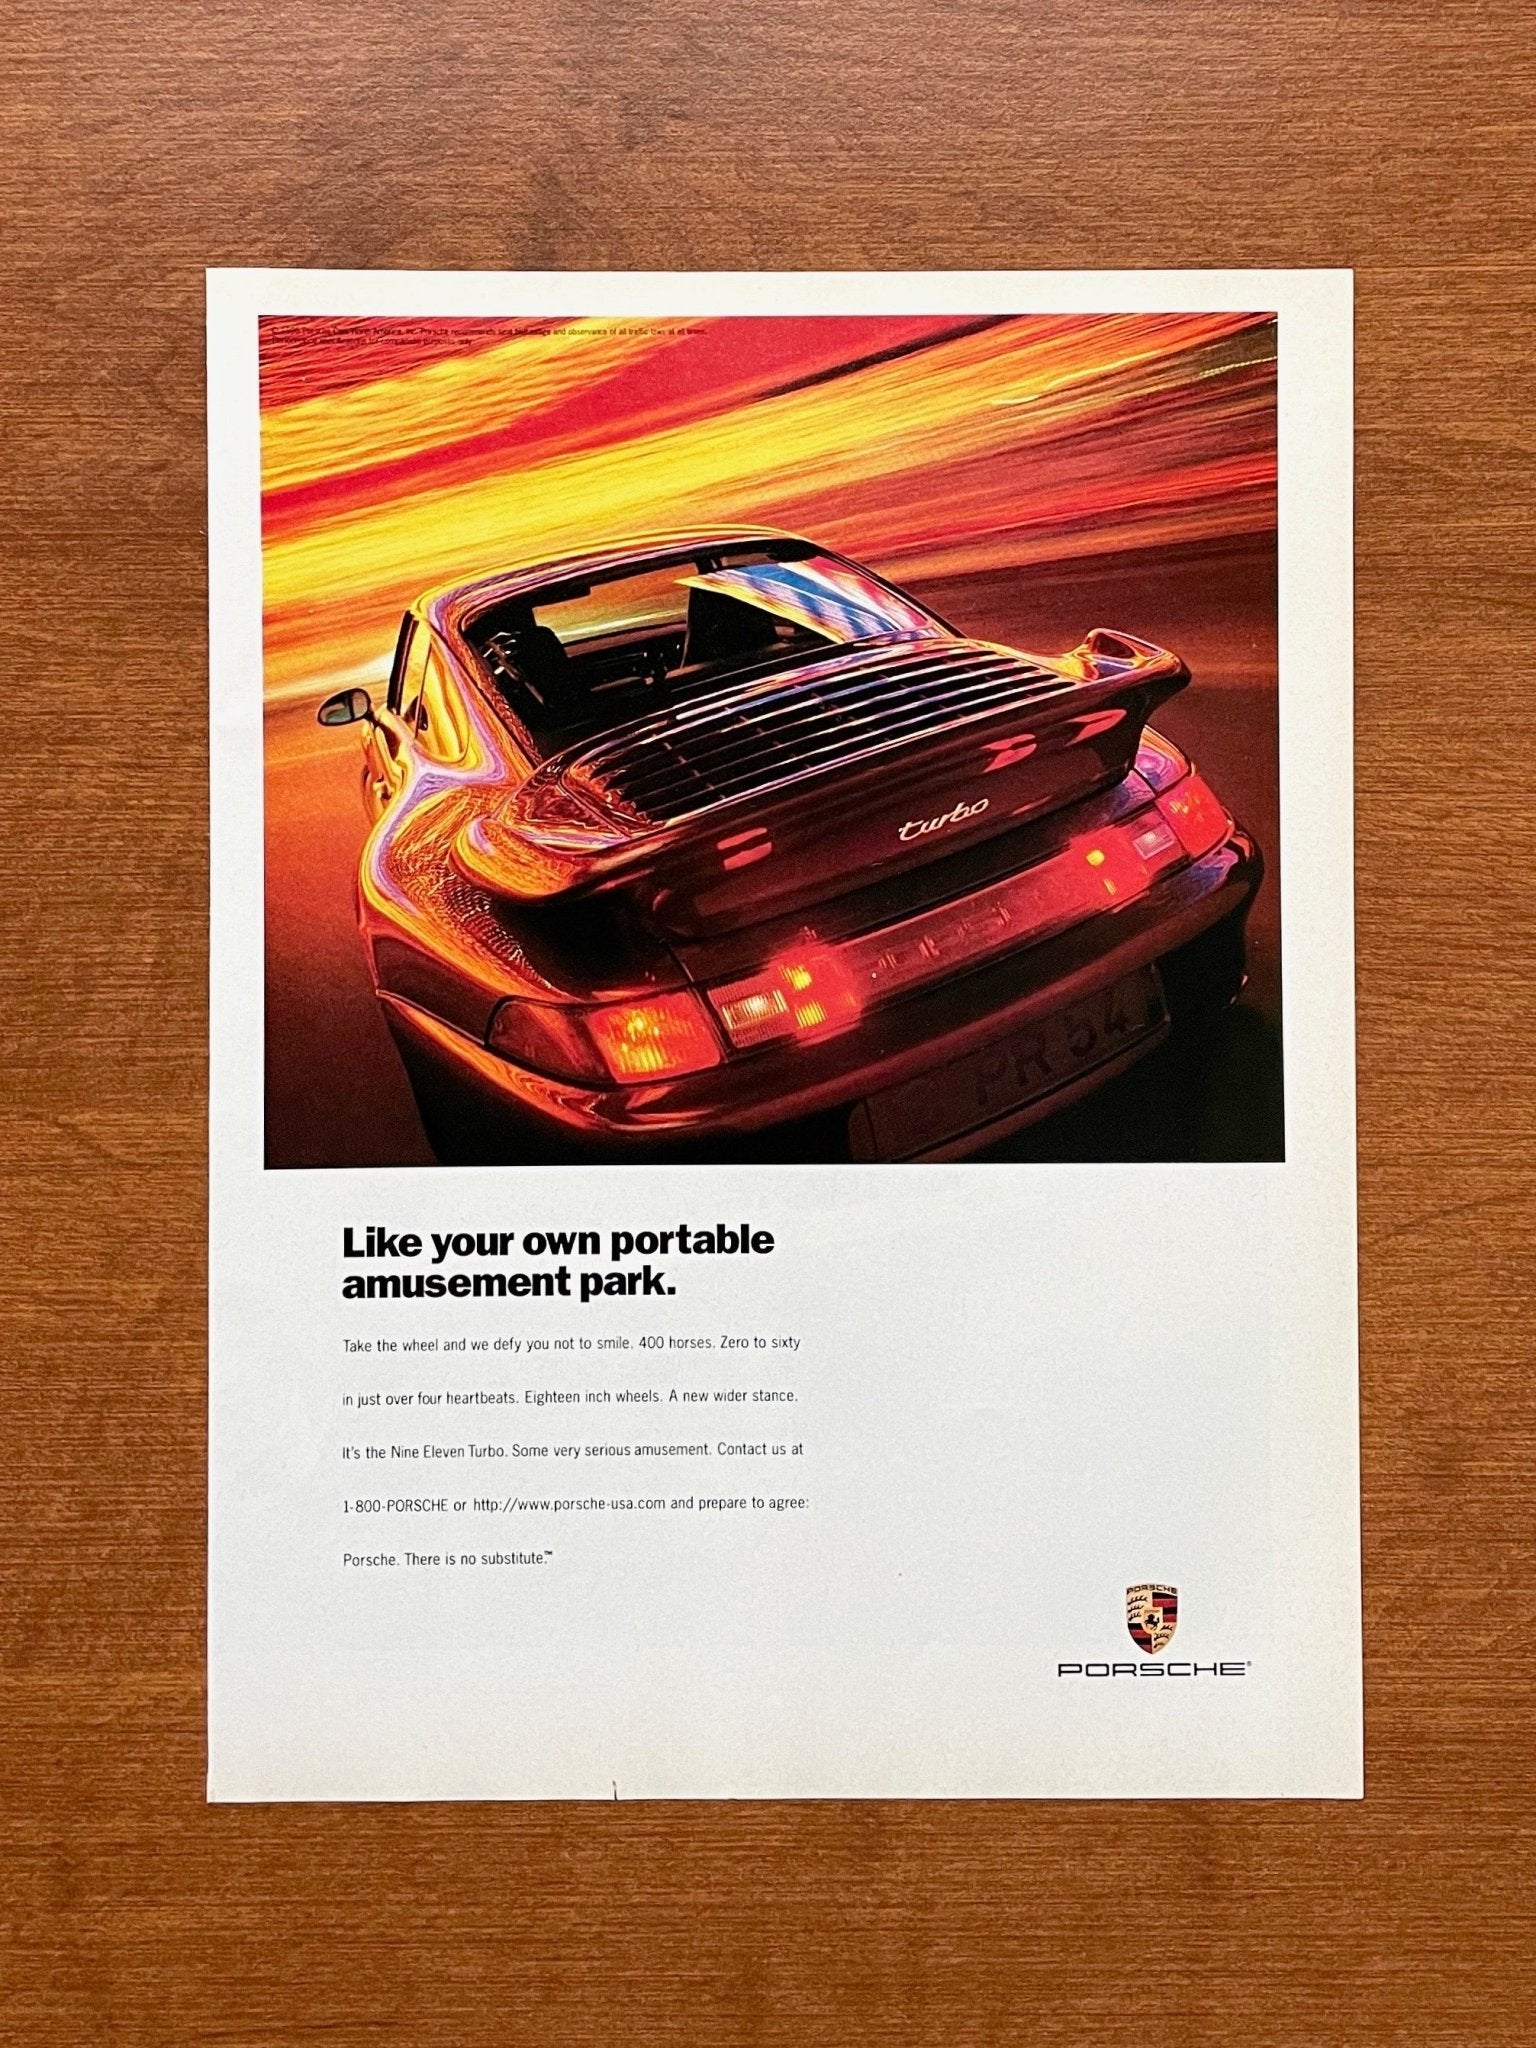 1996 Porsche 911 Turbo "your own portable amusement park." Advertisement